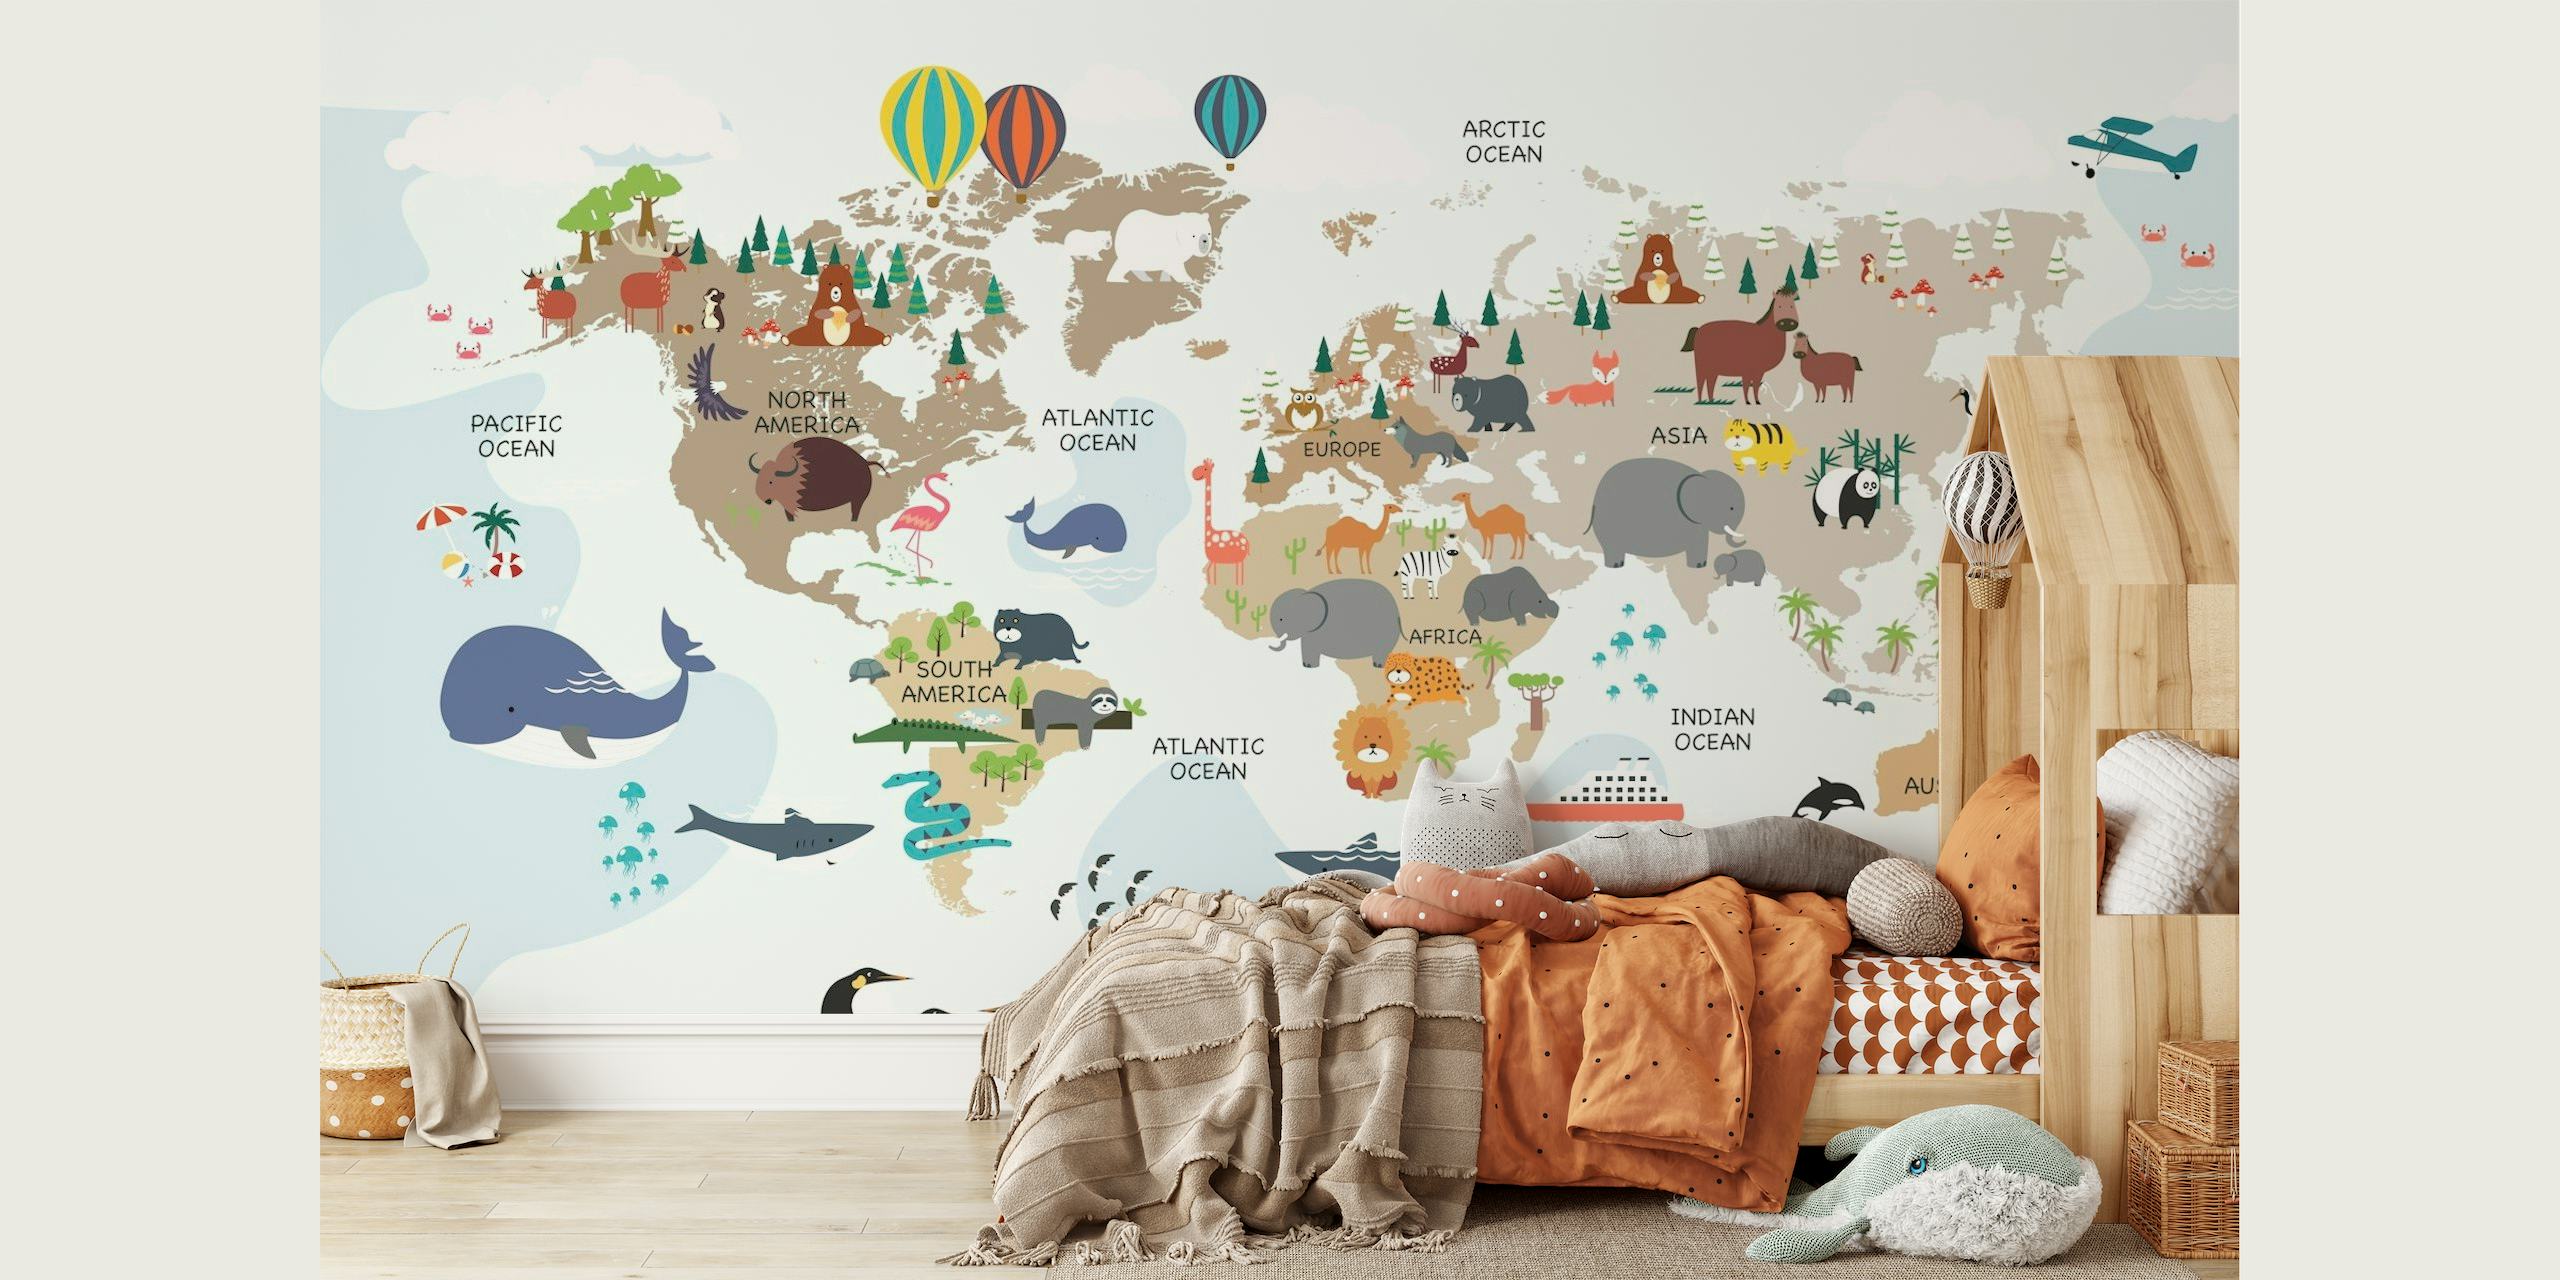 Colorido y educativo mural infantil del Mapa del Mundo con animales de dibujos animados y monumentos